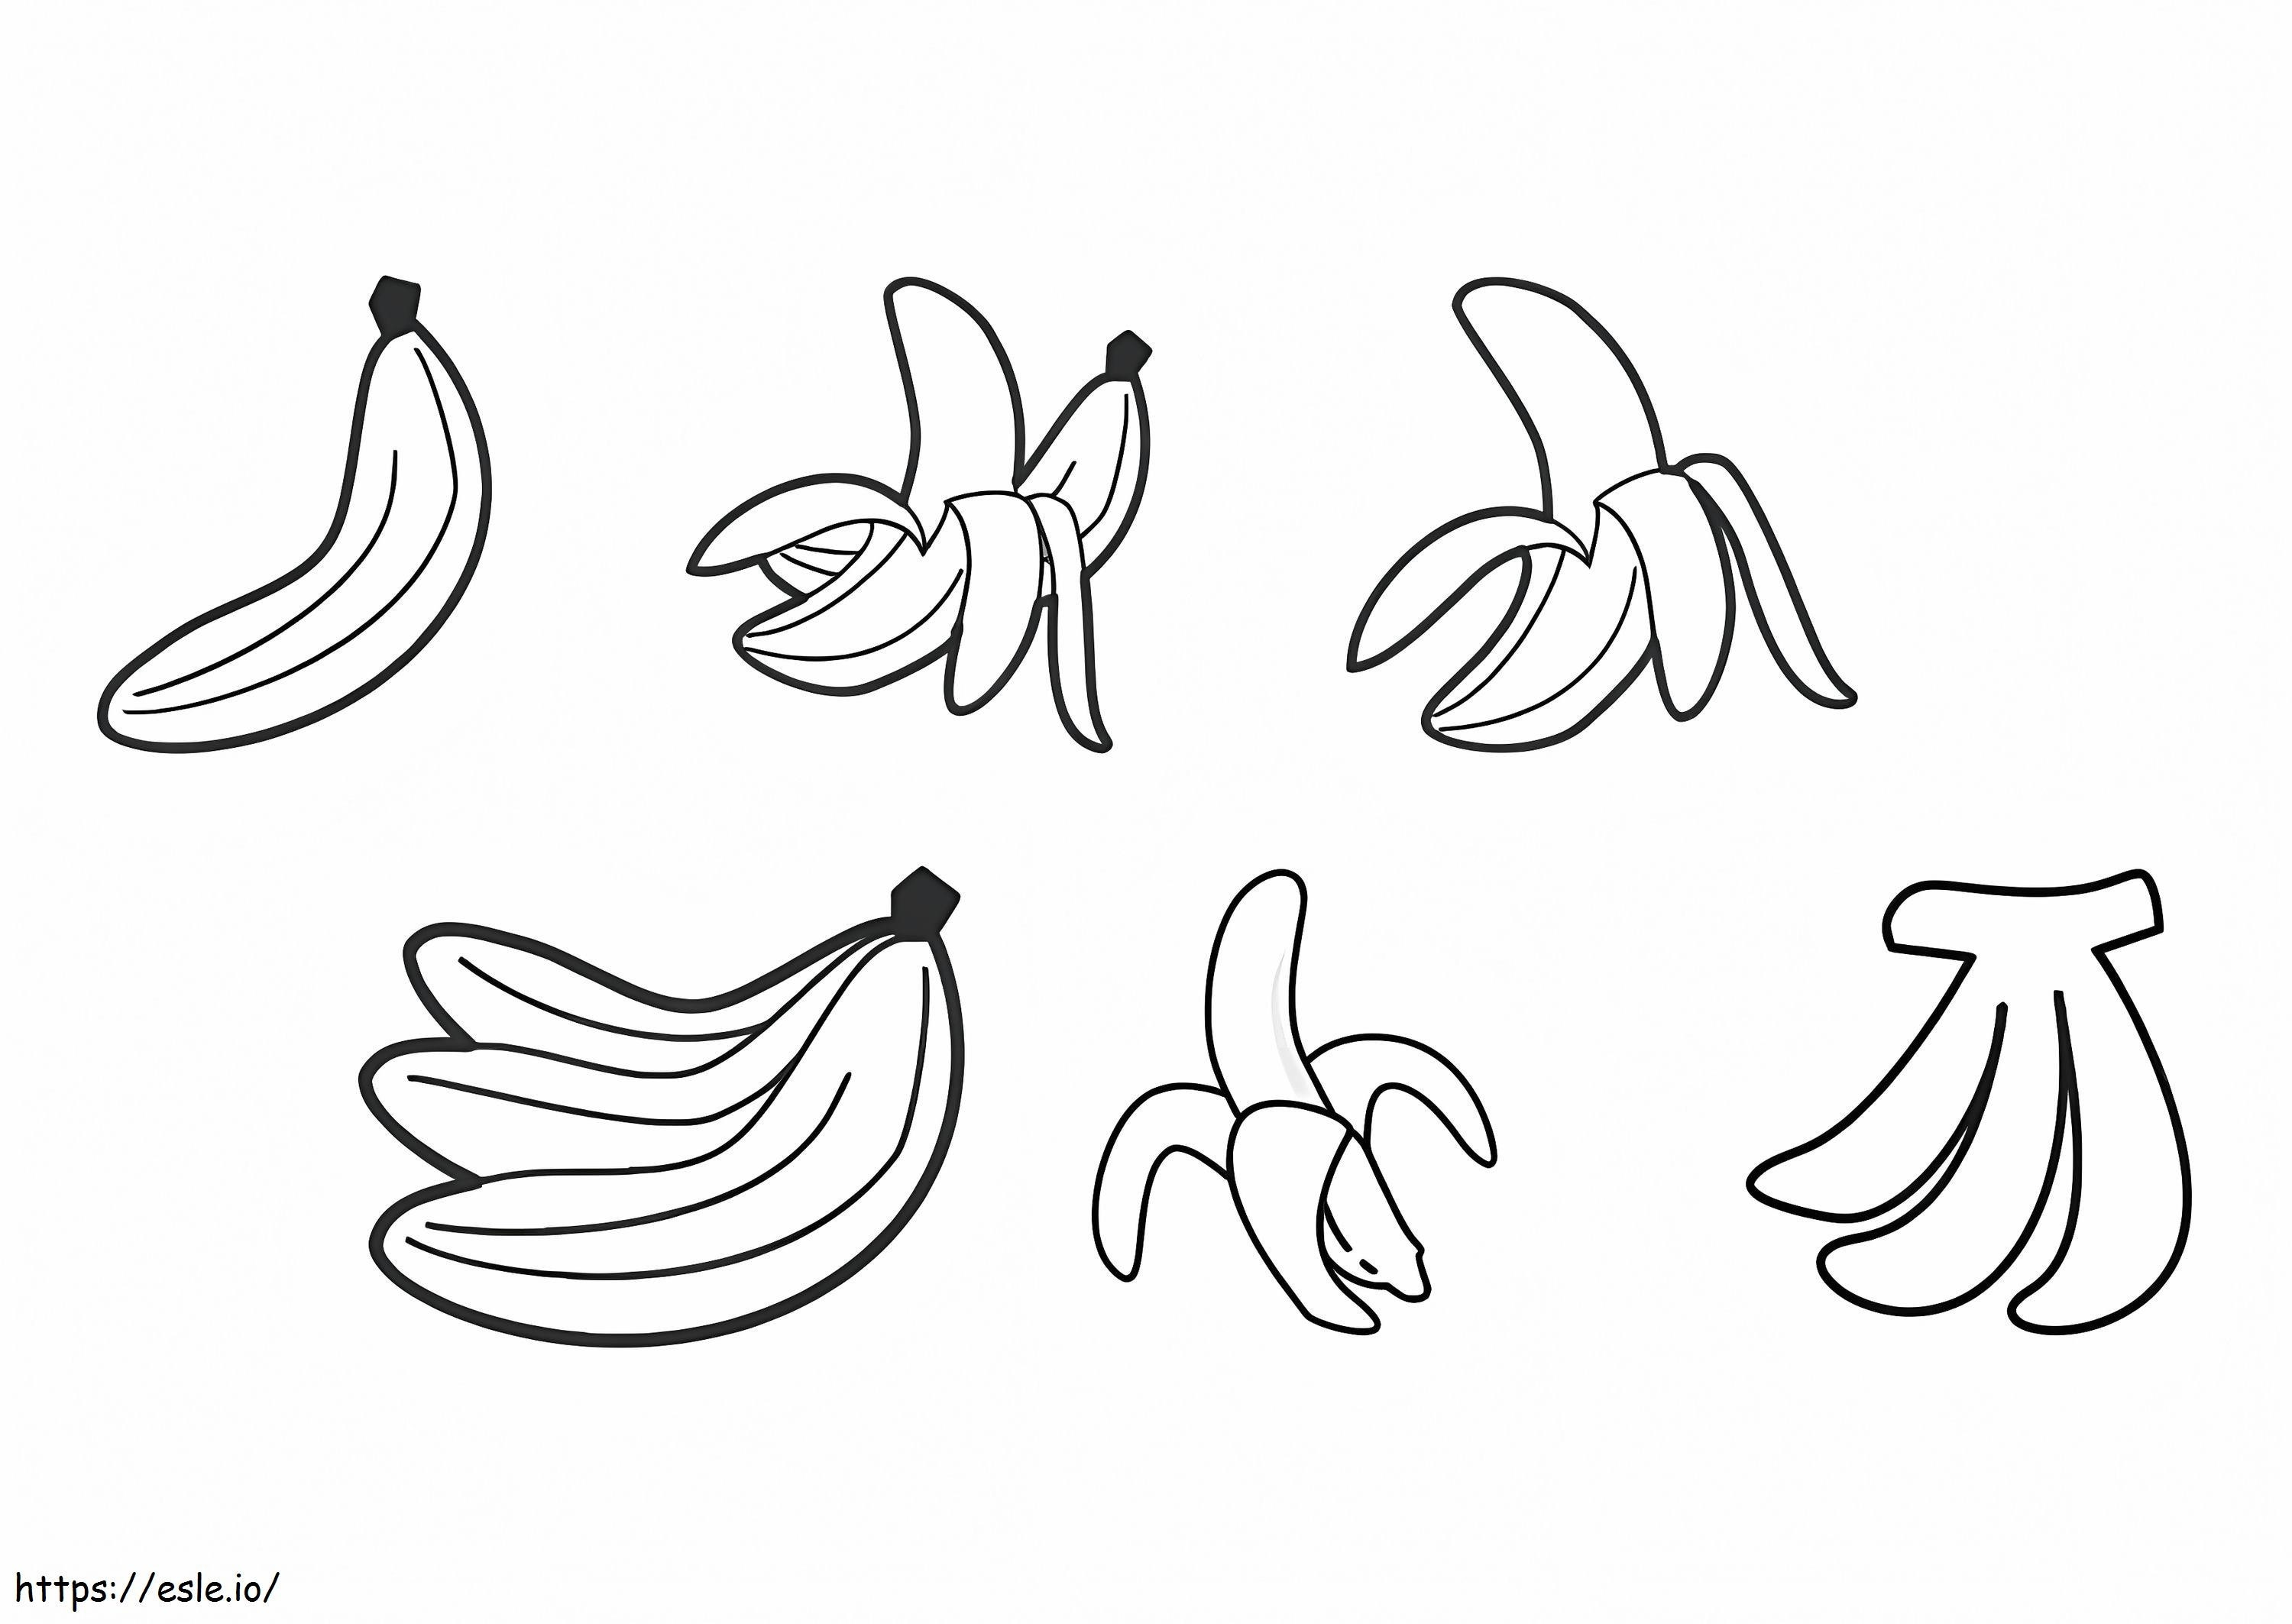 Gute Banane ausmalbilder